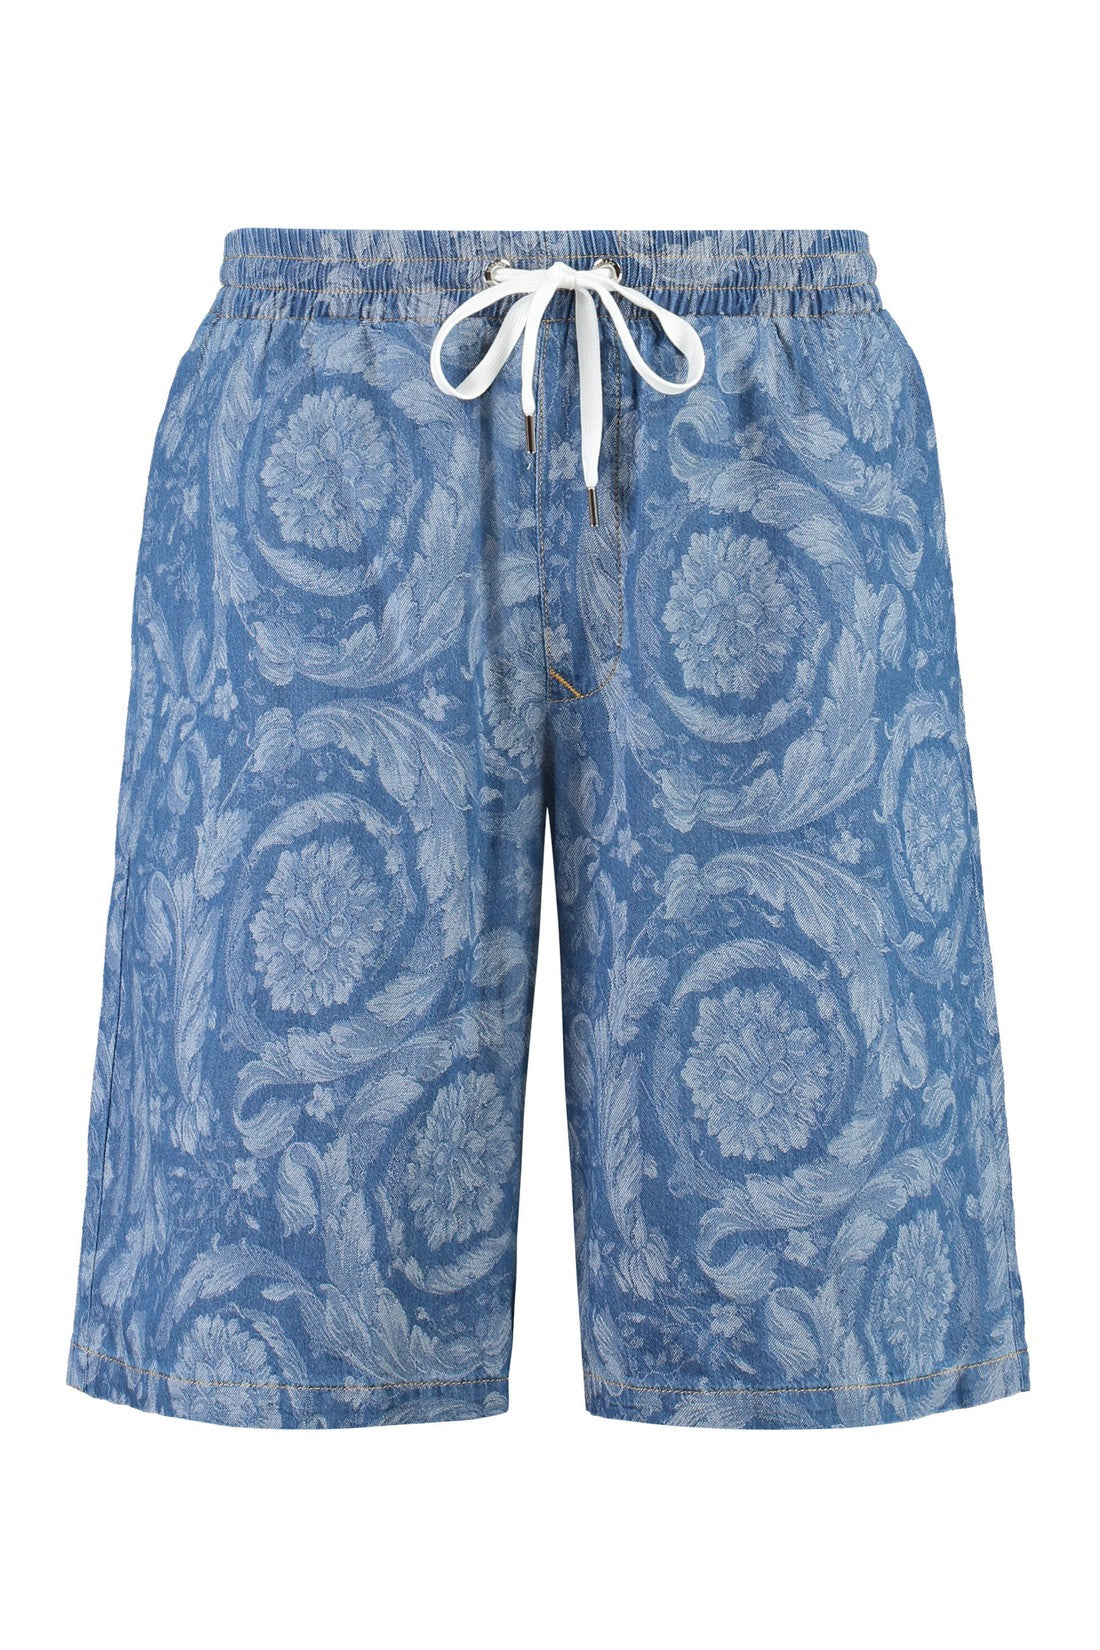 Versace-OUTLET-SALE-Cotton bermuda shorts-ARCHIVIST